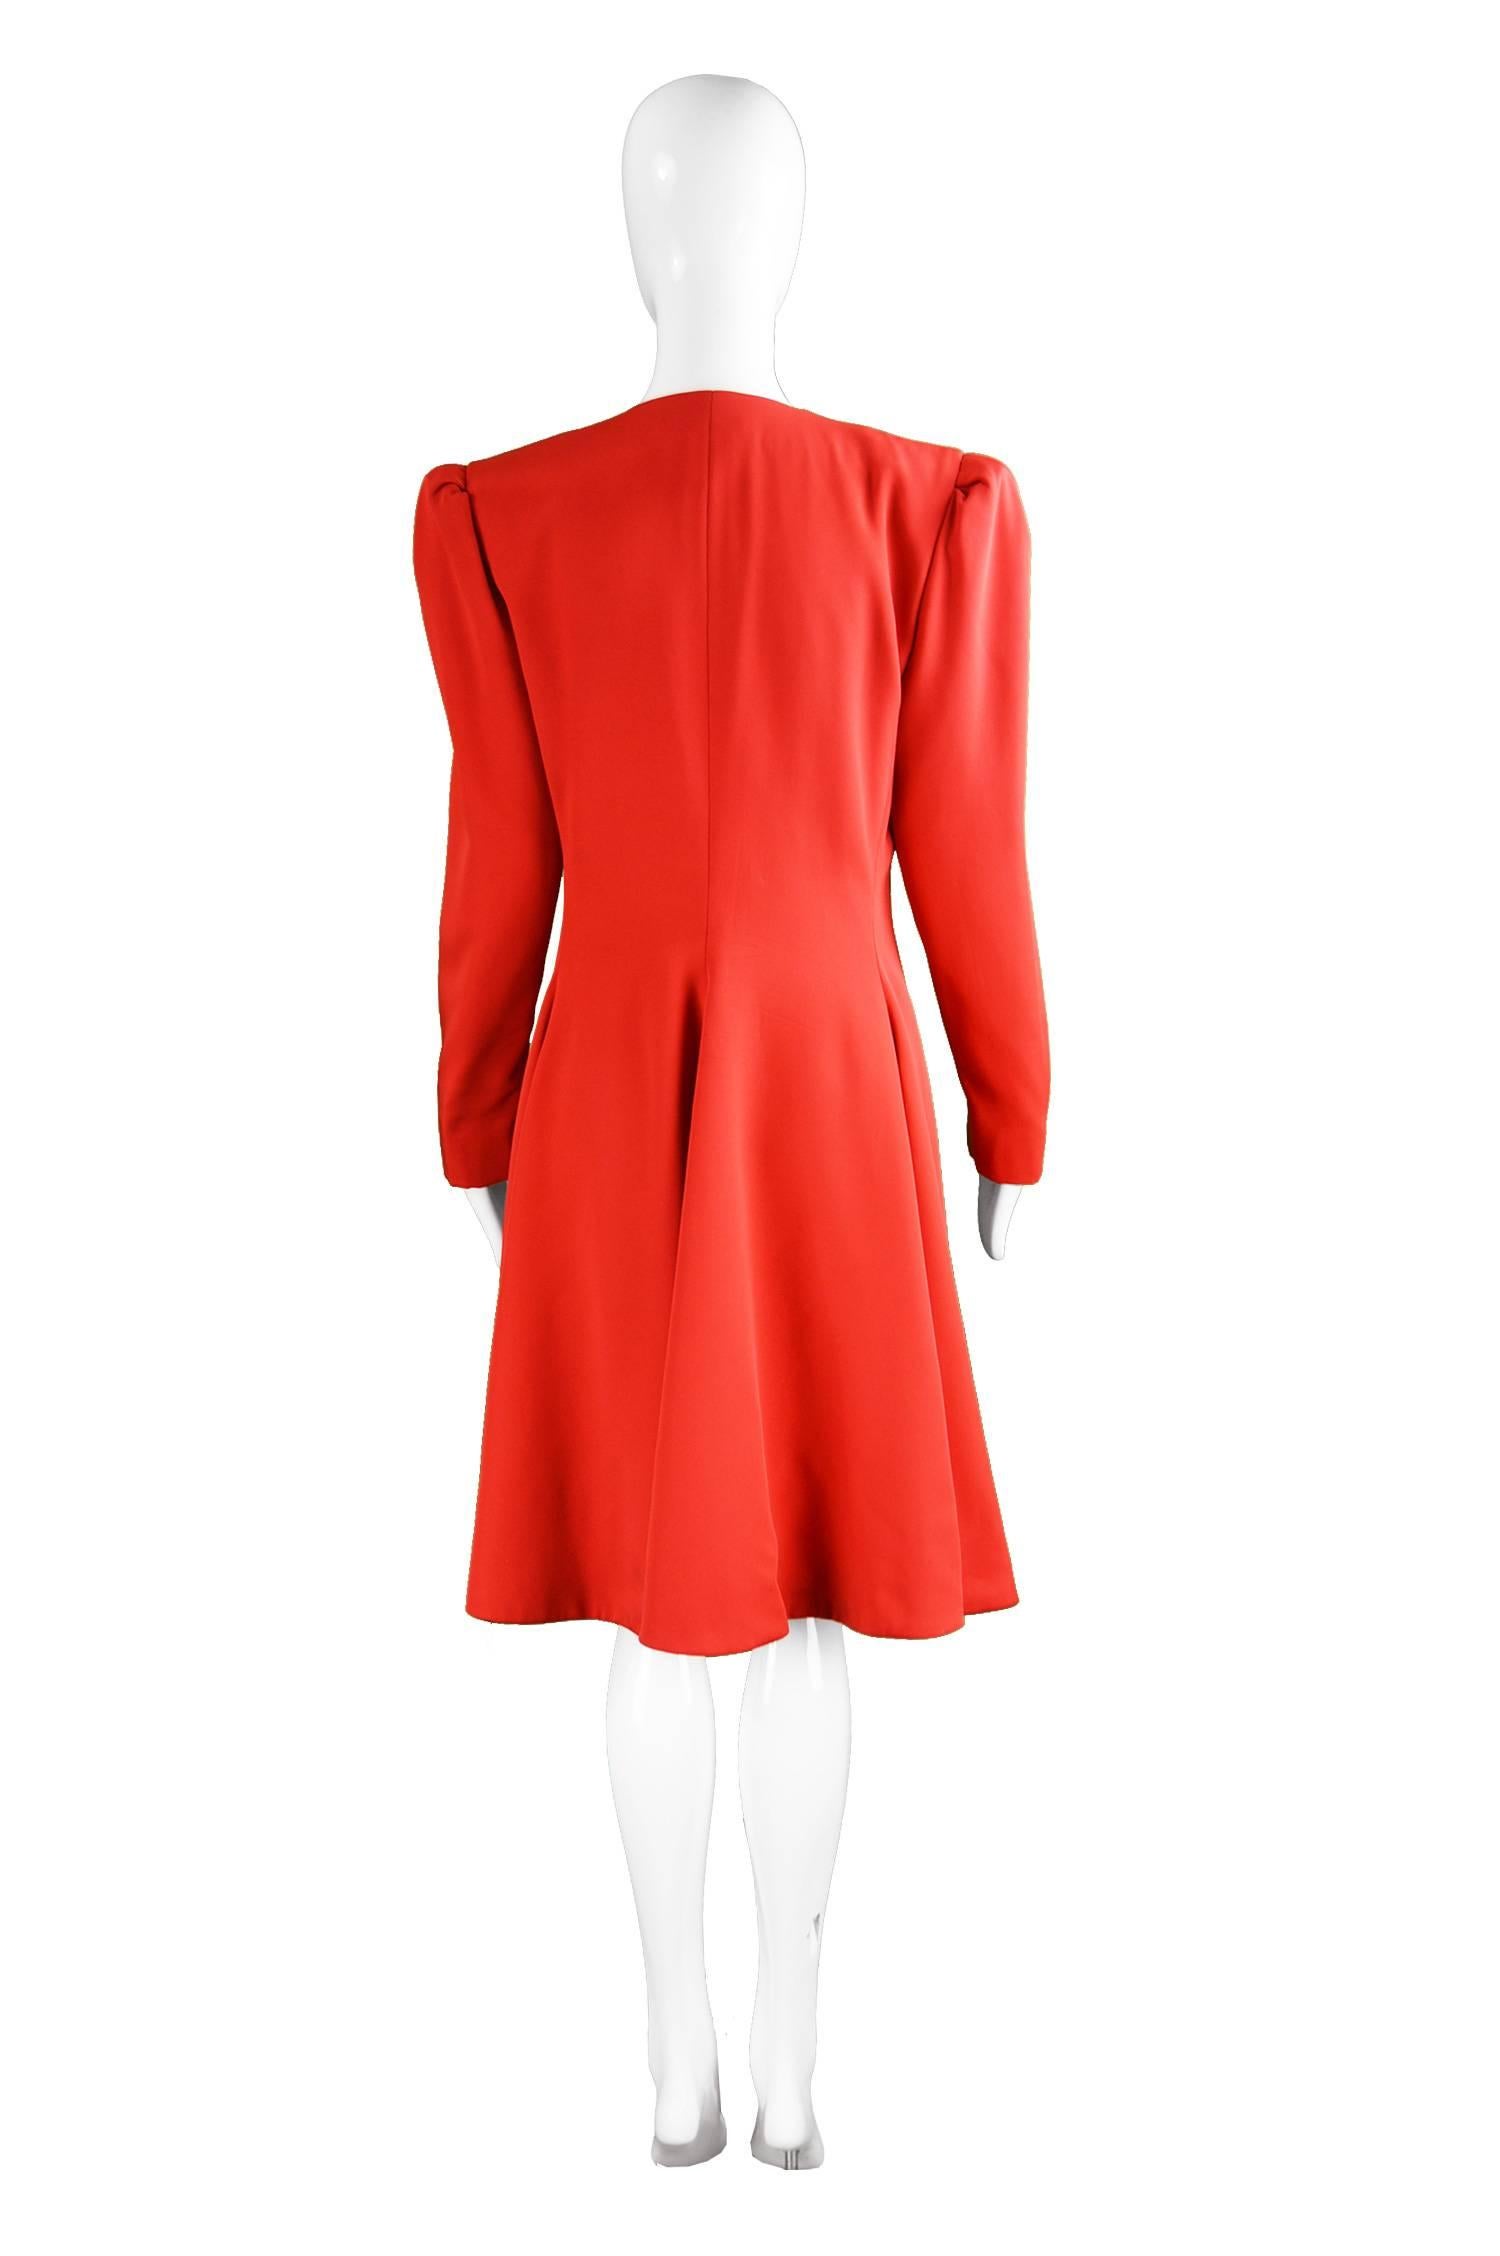 Carolina Herrera For Neiman Marcus Red Silk Full Skirt Evening Coat, 1980s 2